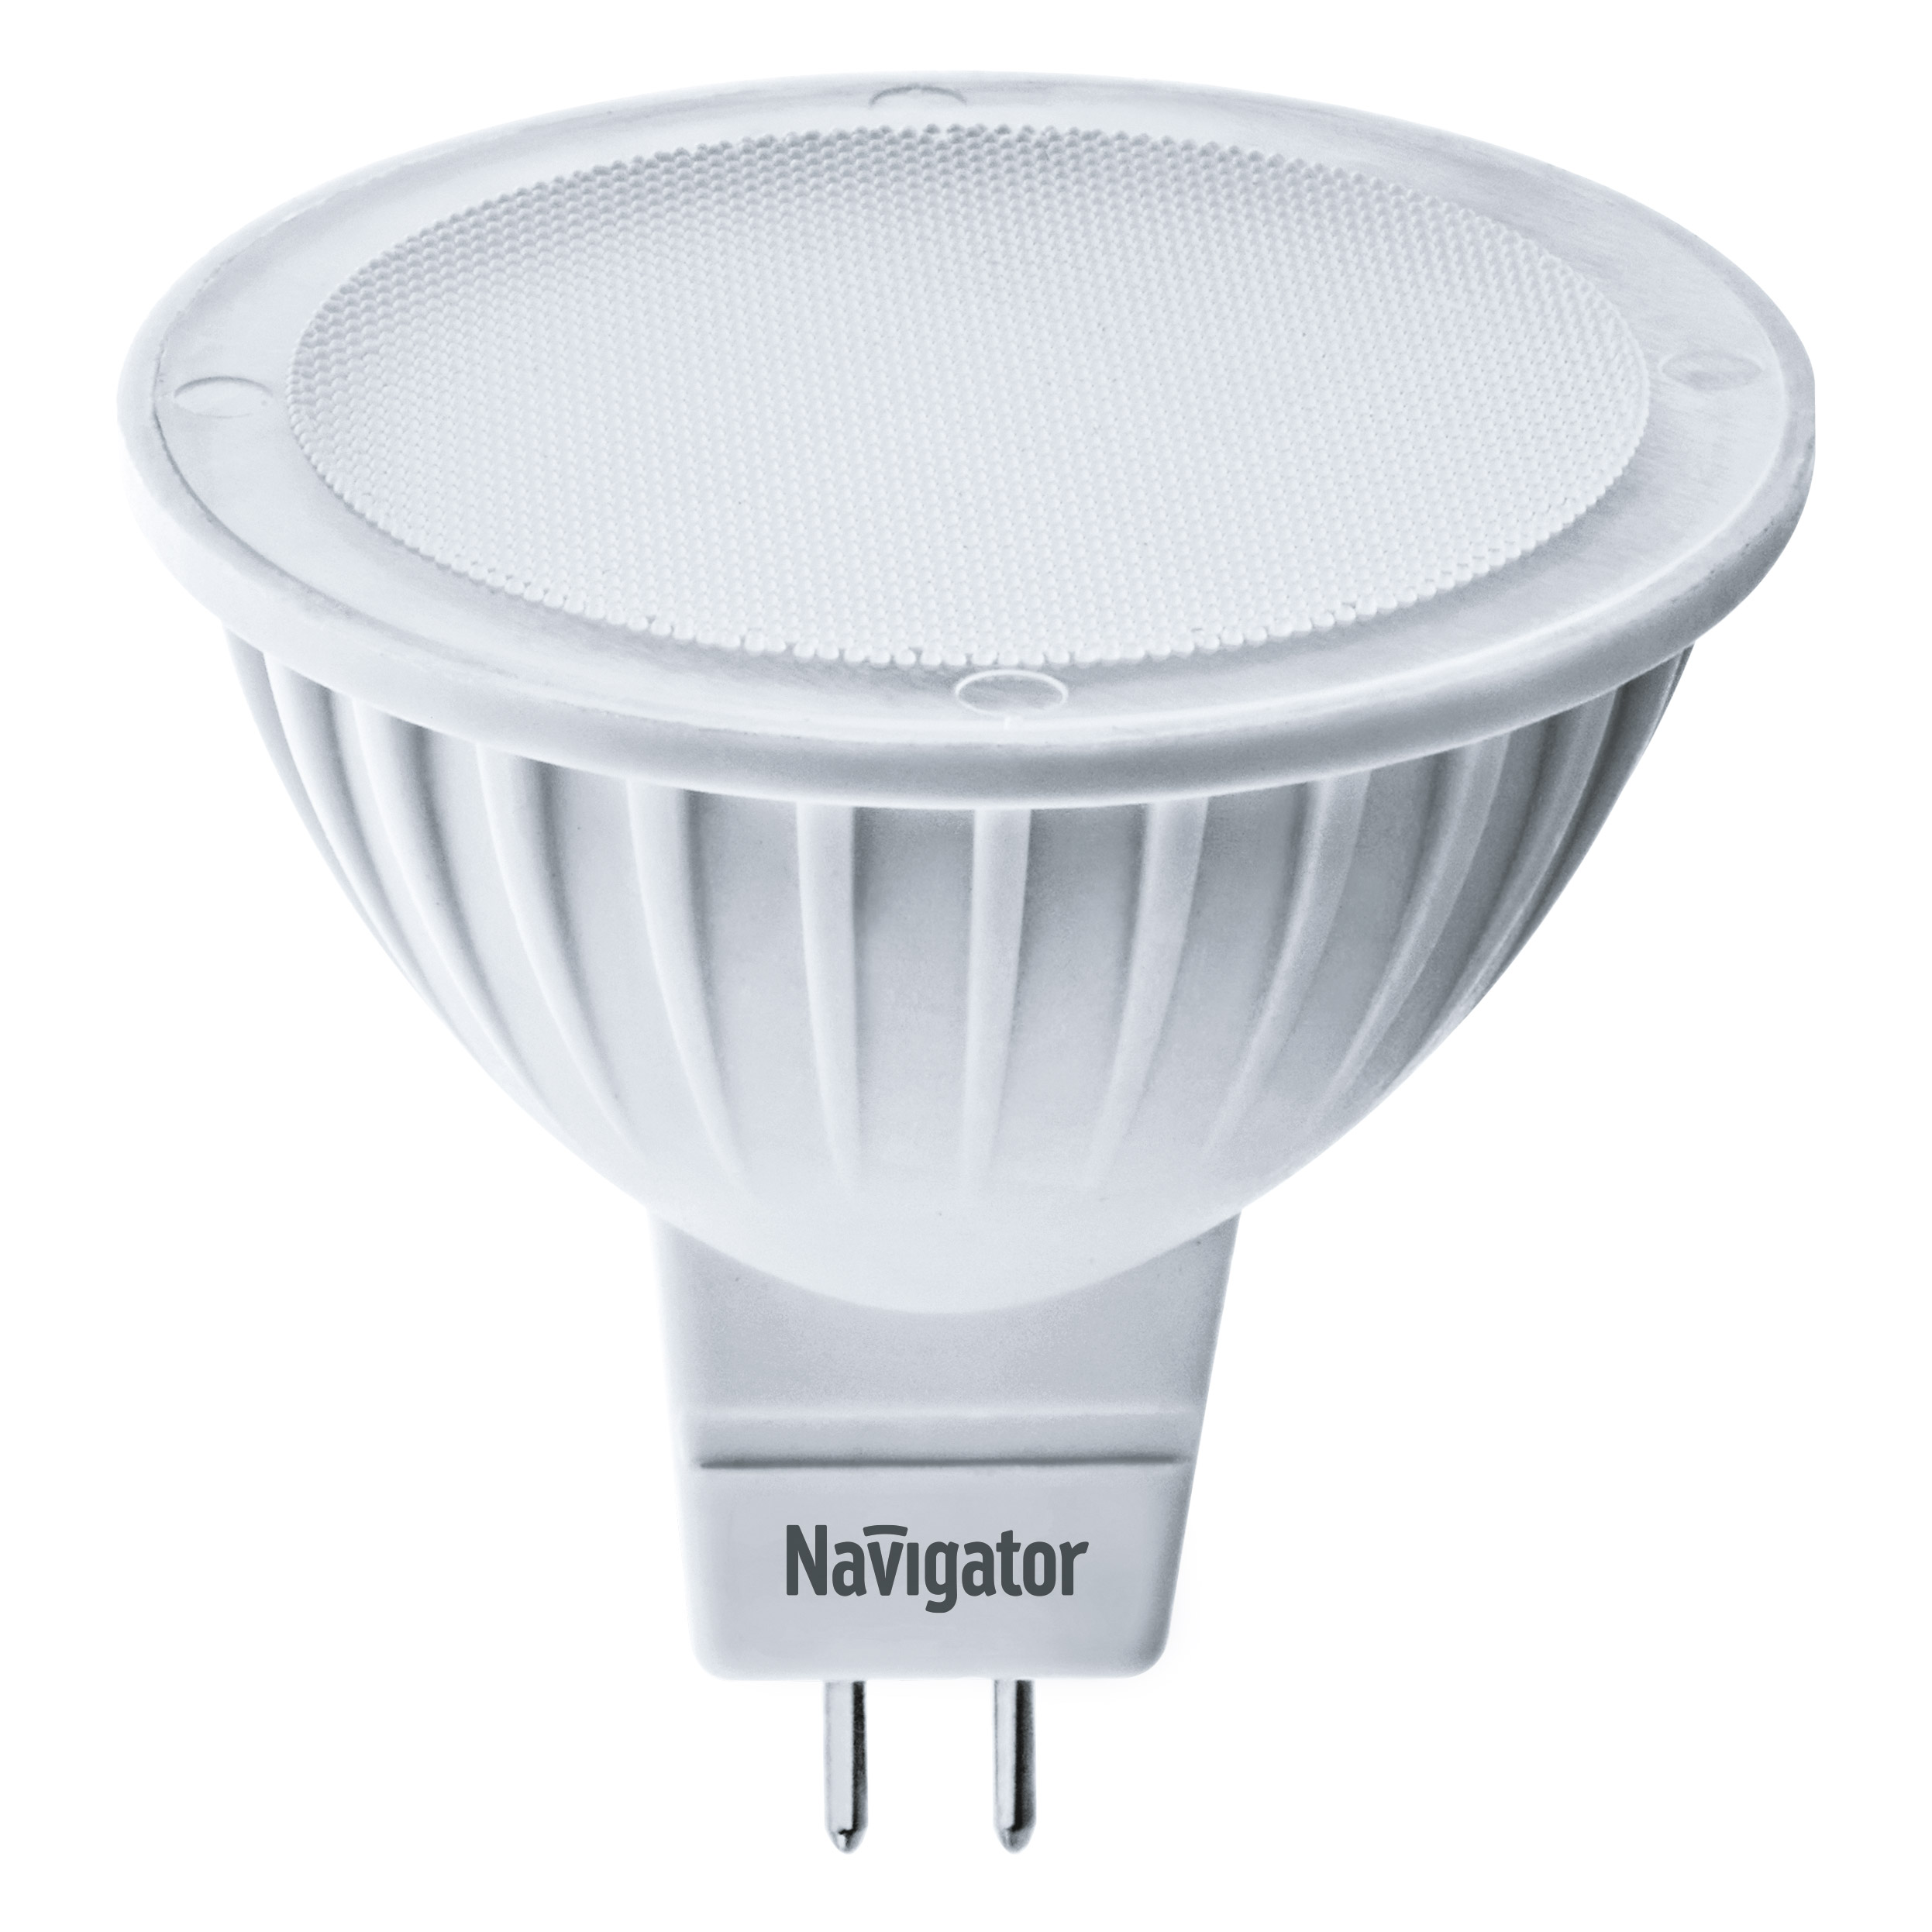 Лампа светодиодная Navigator MR16 5Вт 12В цоколь GU5.3 (теплый свет) лампа светодиодная navigator зеркальная r50 5вт цоколь e14 теплый свет